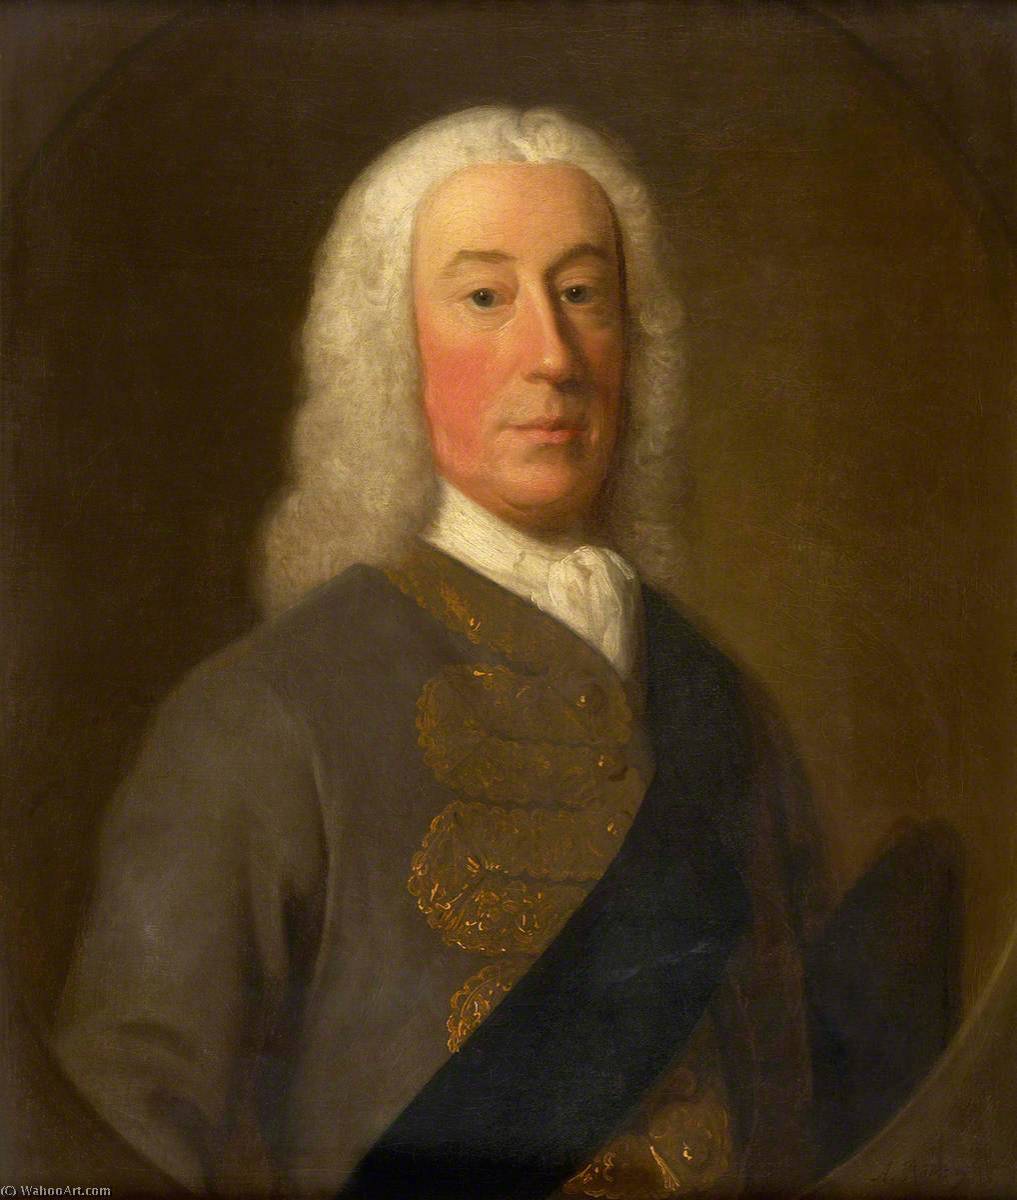 WikiOO.org - Encyclopedia of Fine Arts - Målning, konstverk Allan Ramsay - James Murray (1690–1764), 2nd Duke of Atholl